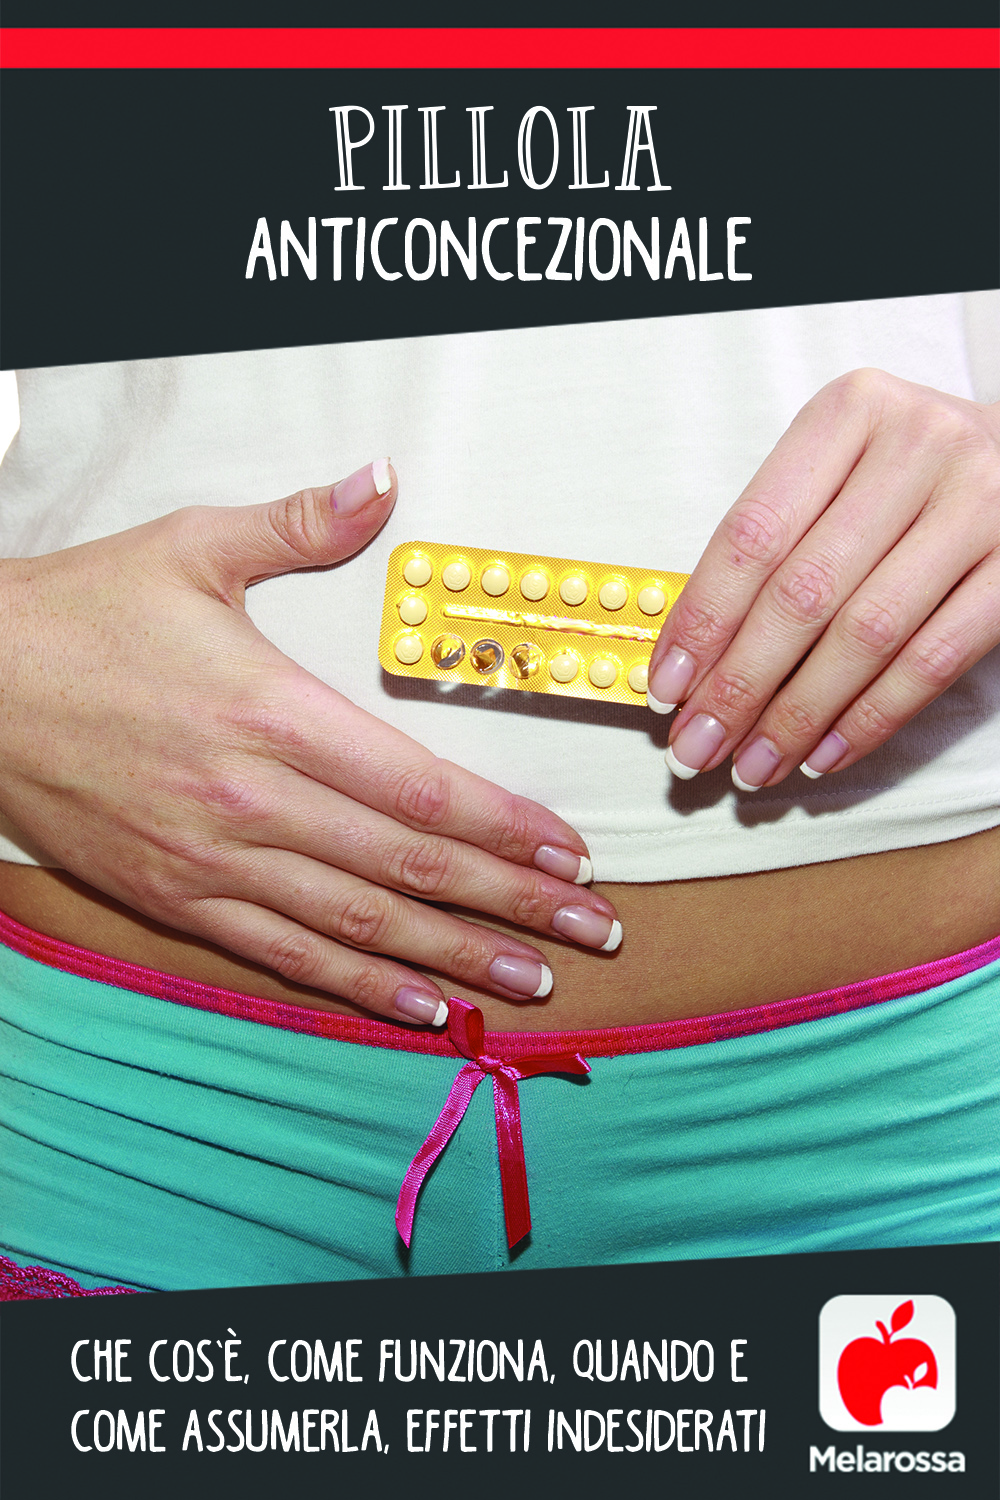 pillola anticoncezionale: cos'è, come funziona,  benefici, nomi pillola e rischi 